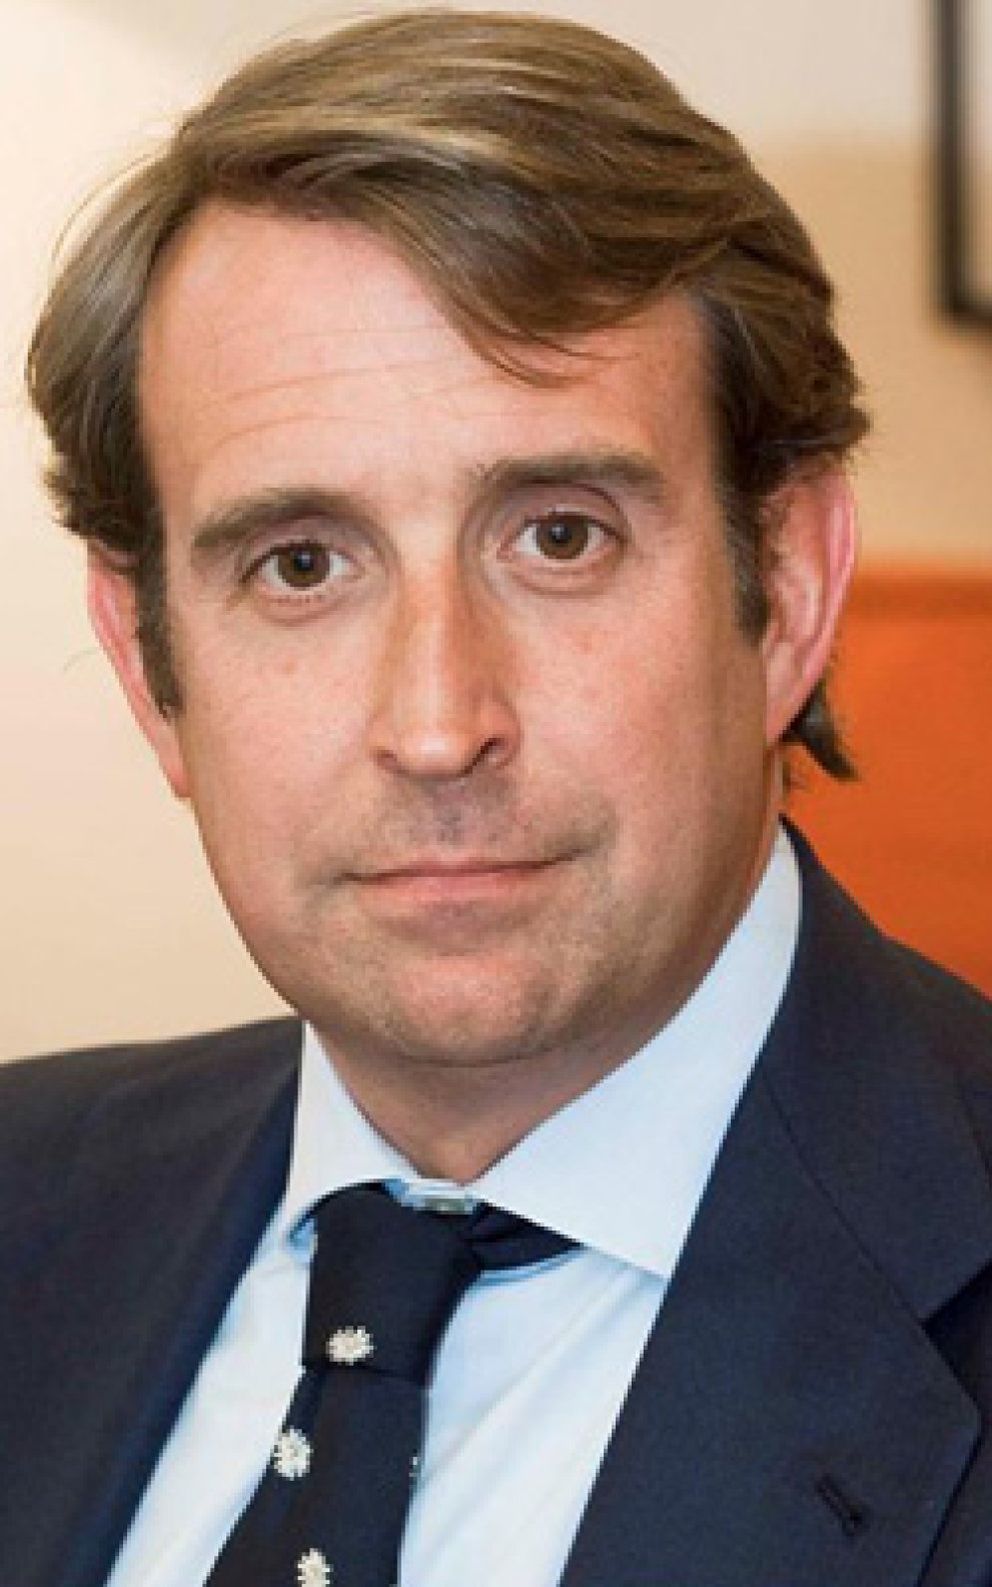 Foto: UBS ficha al presidente de Merrill Lynch en España con un gran cargo en Londres